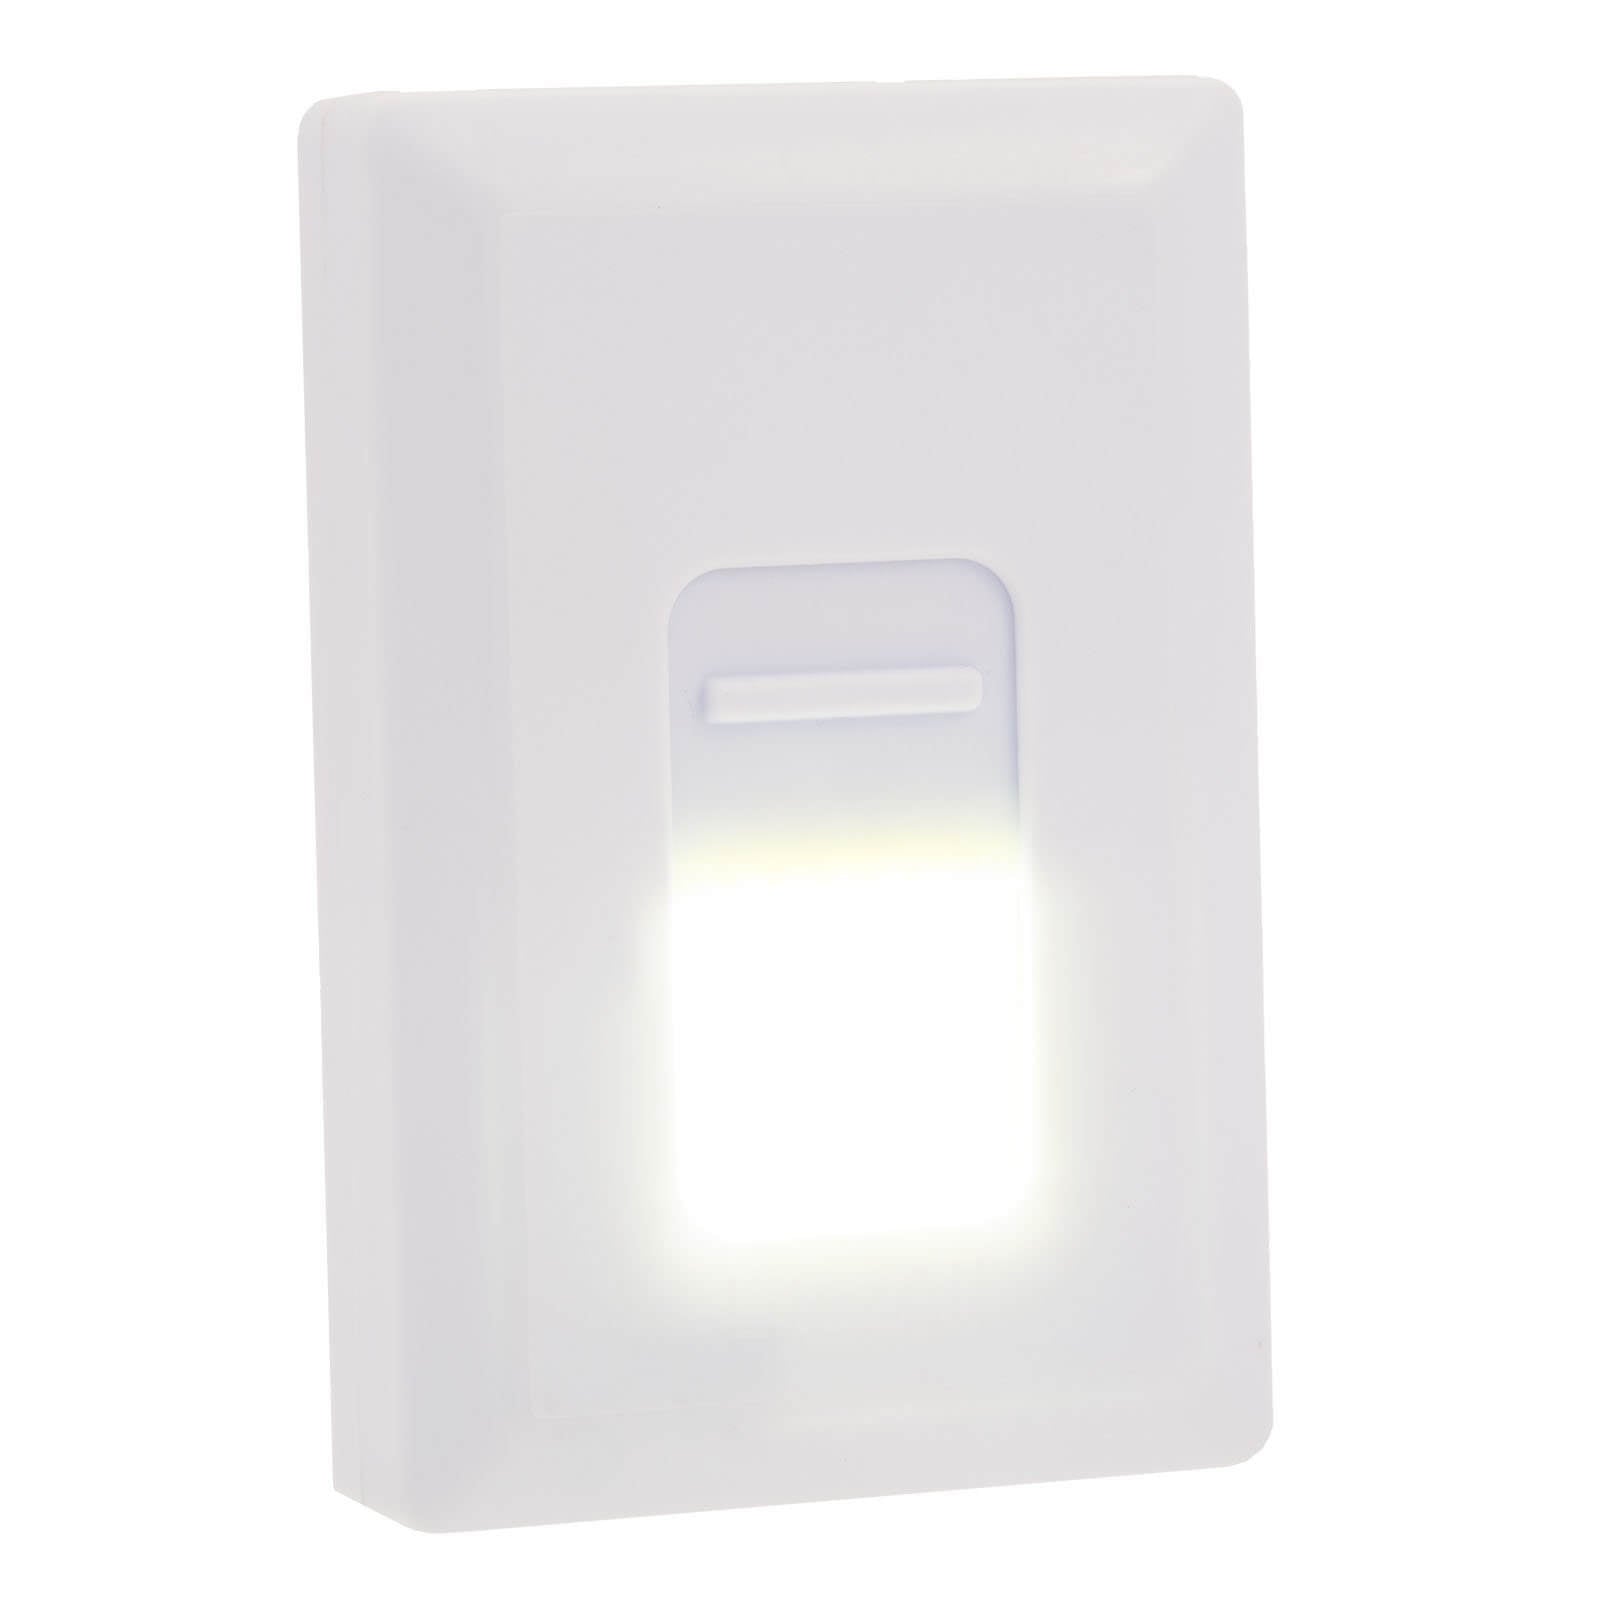 LitezAll Glyde Wireless Light Switch - LitezAll